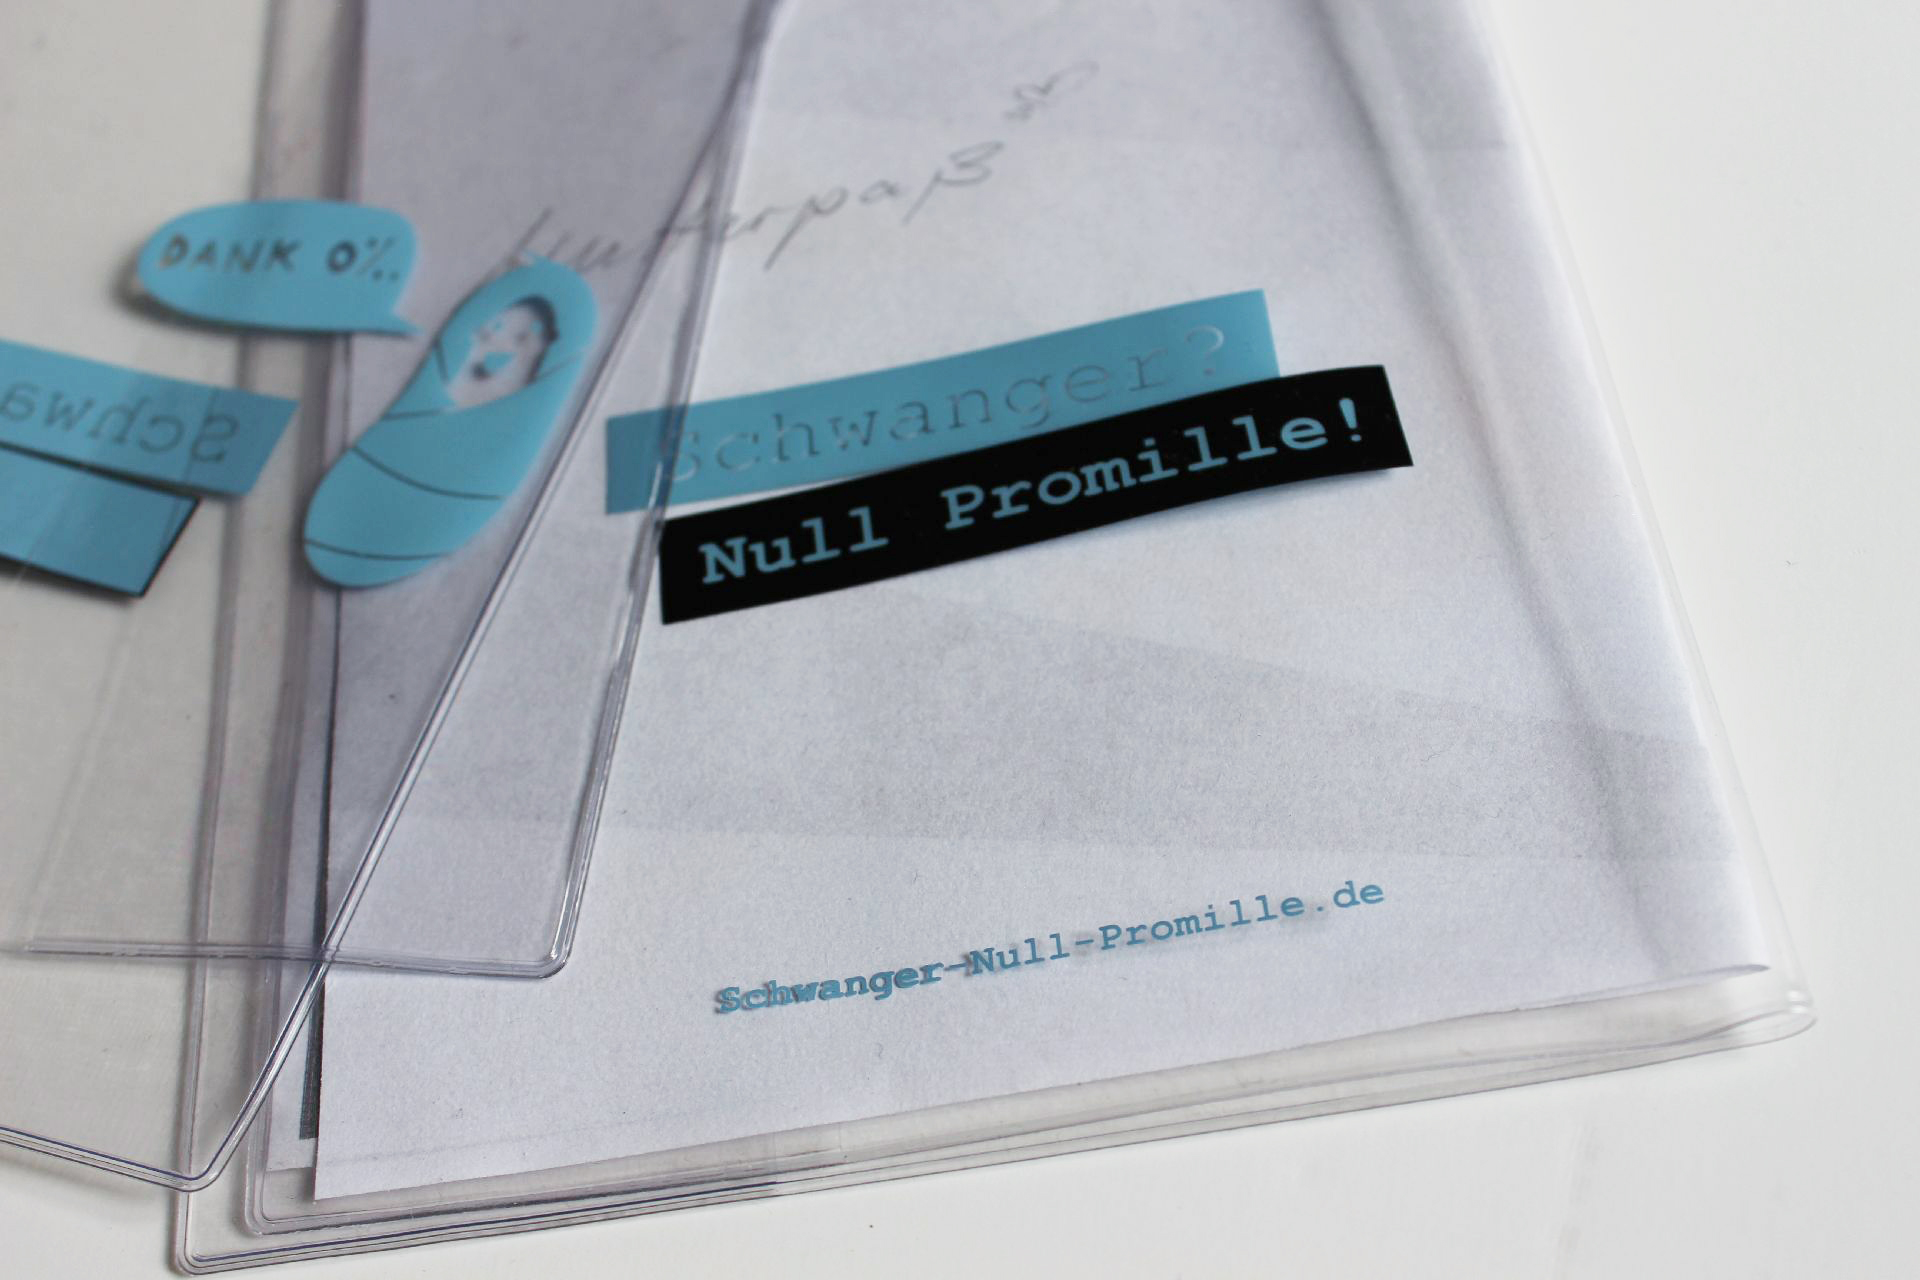 SCHWANGER-NULL-PROMILLE-Mutterpass-1920x1280px-03